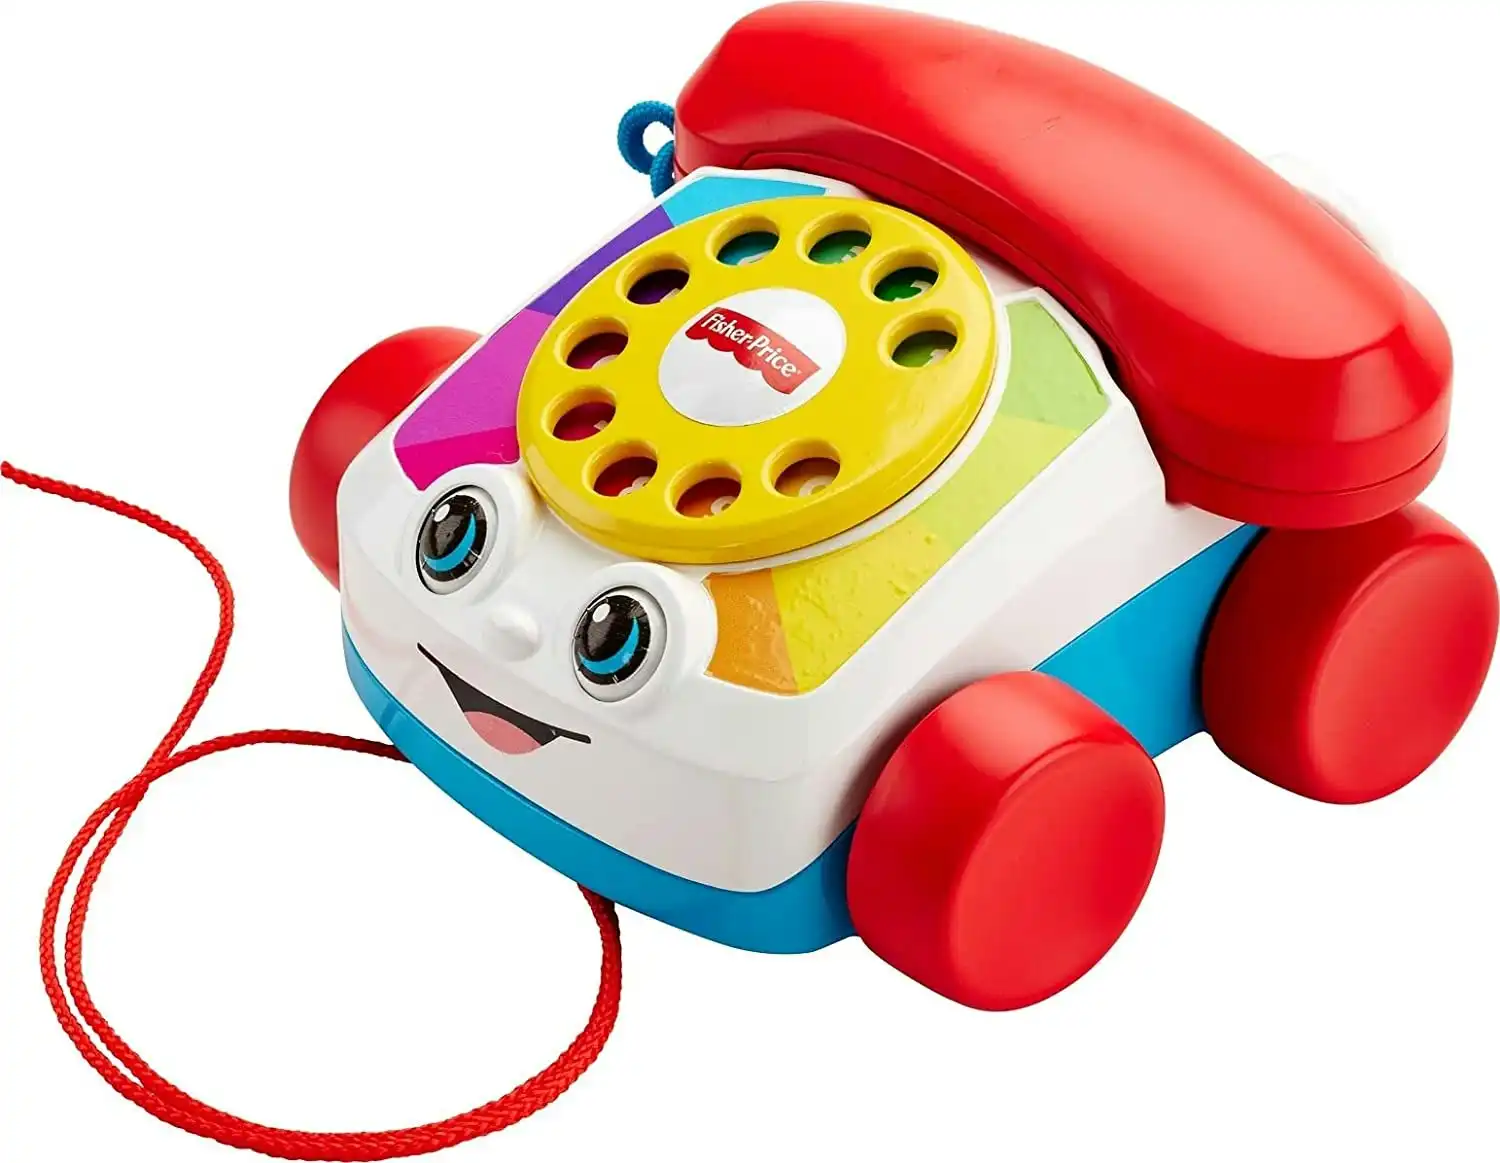 Fisherprice Chatter Telephone